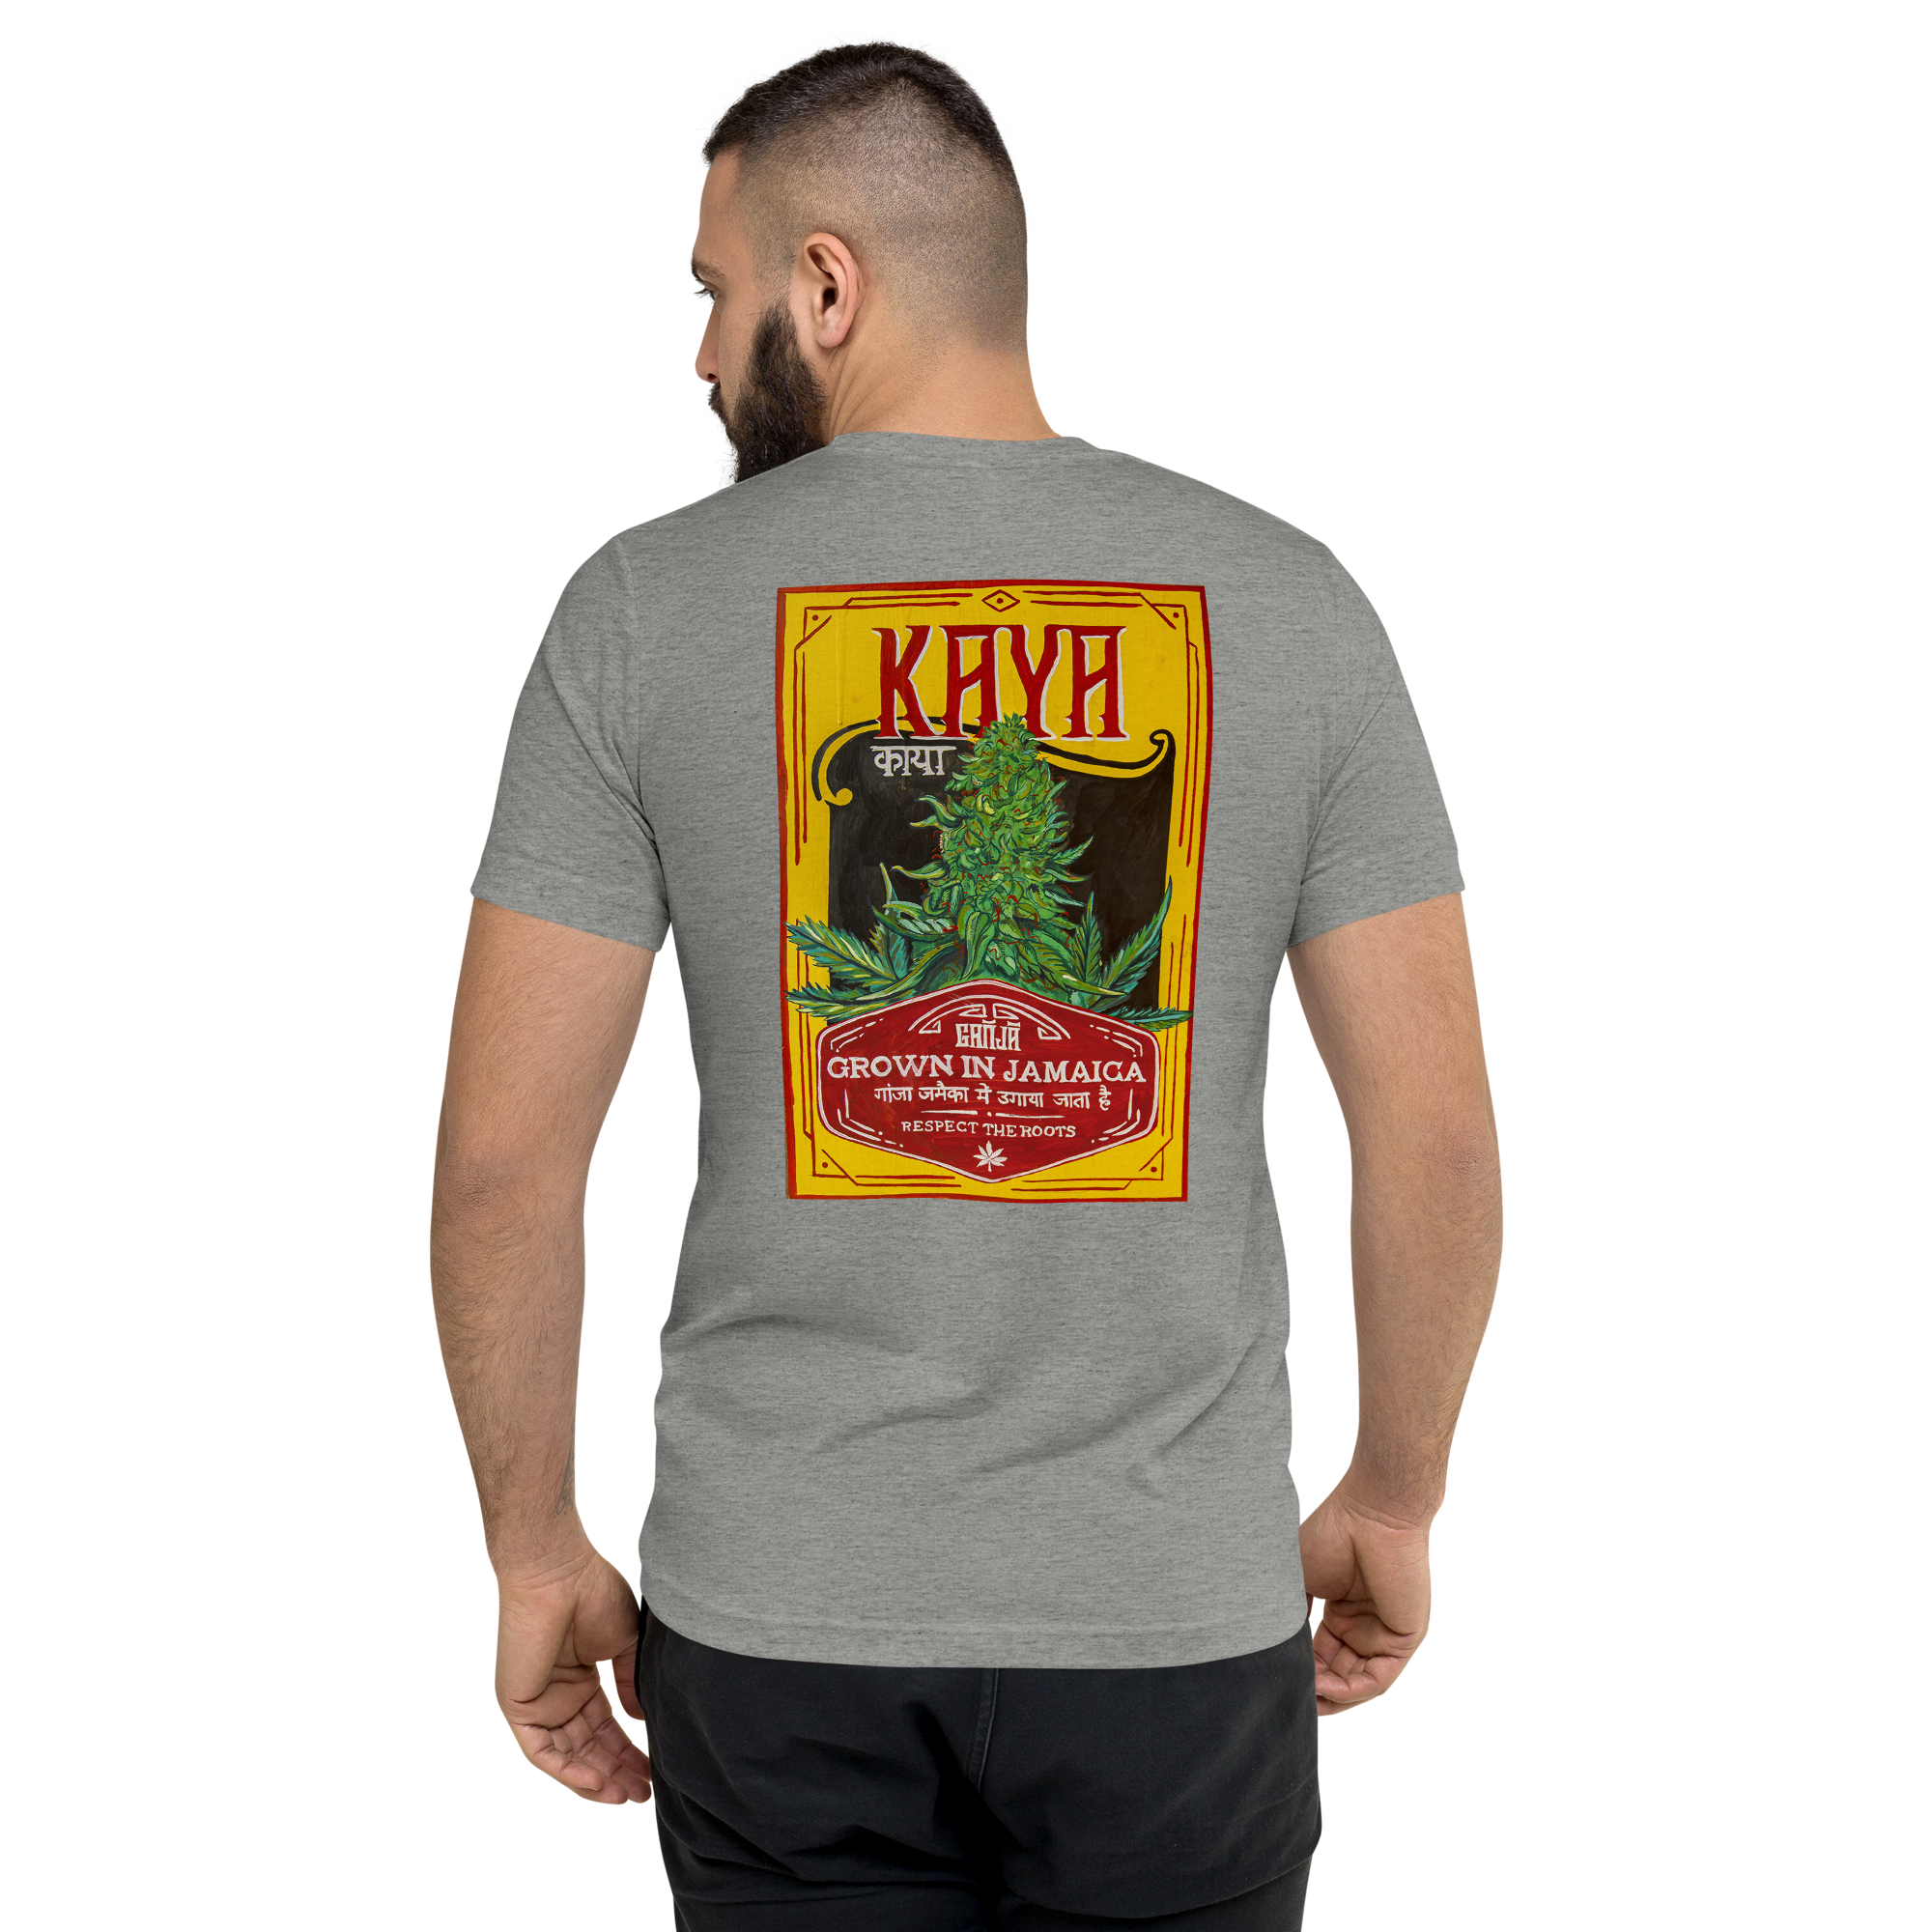 Short Sleeve T-shirt Kaya Sanskrit on Back